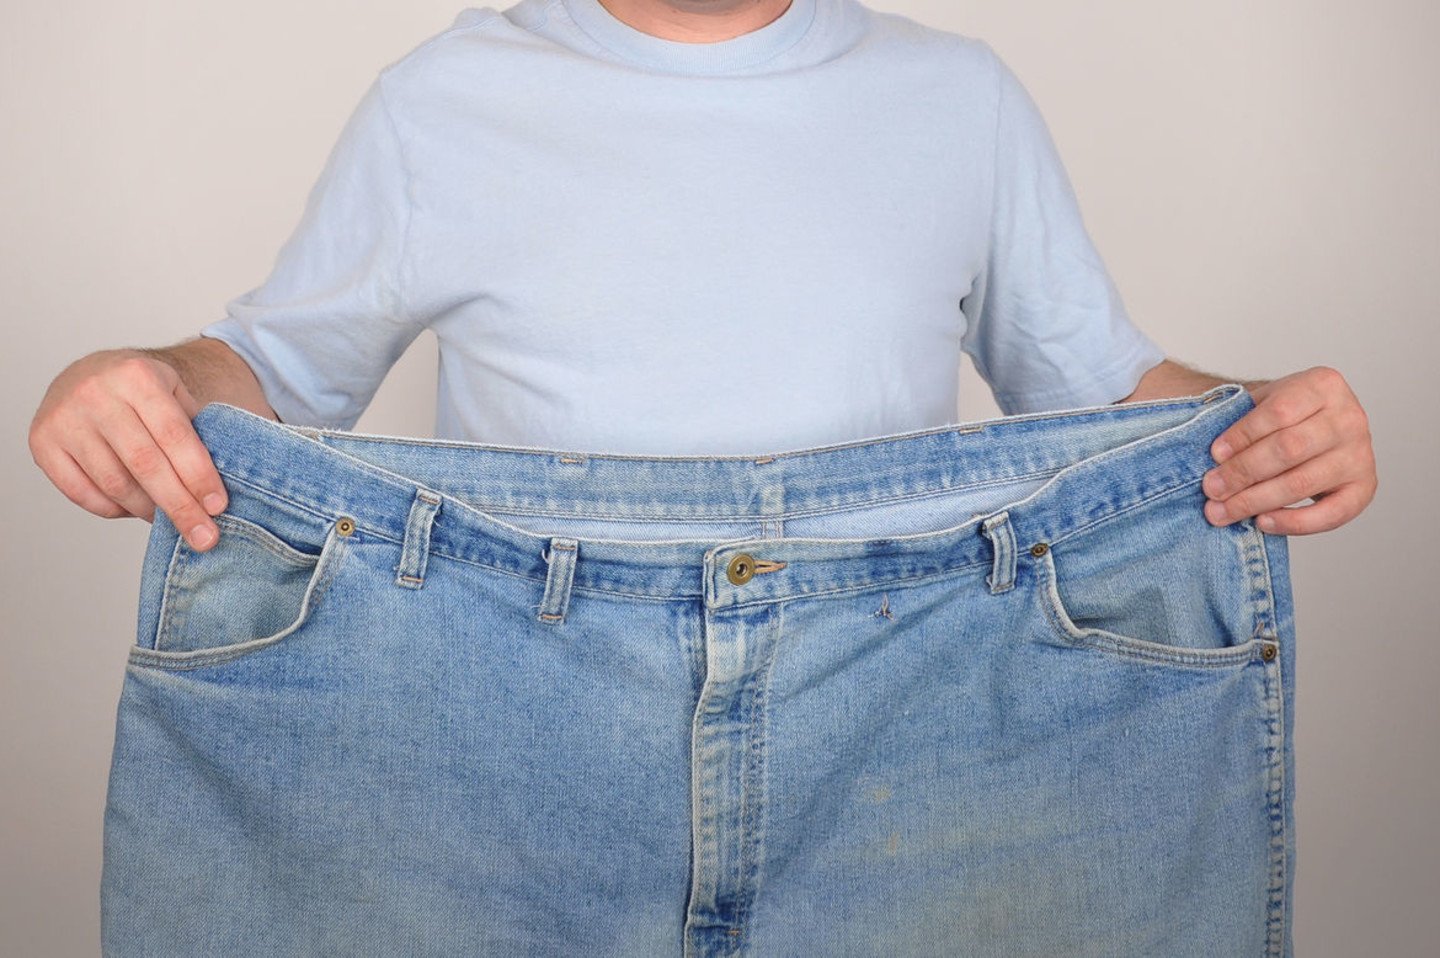 kaip numesti svorio su isabgolio lukštu ar spjaudymasis padeda numesti svorį